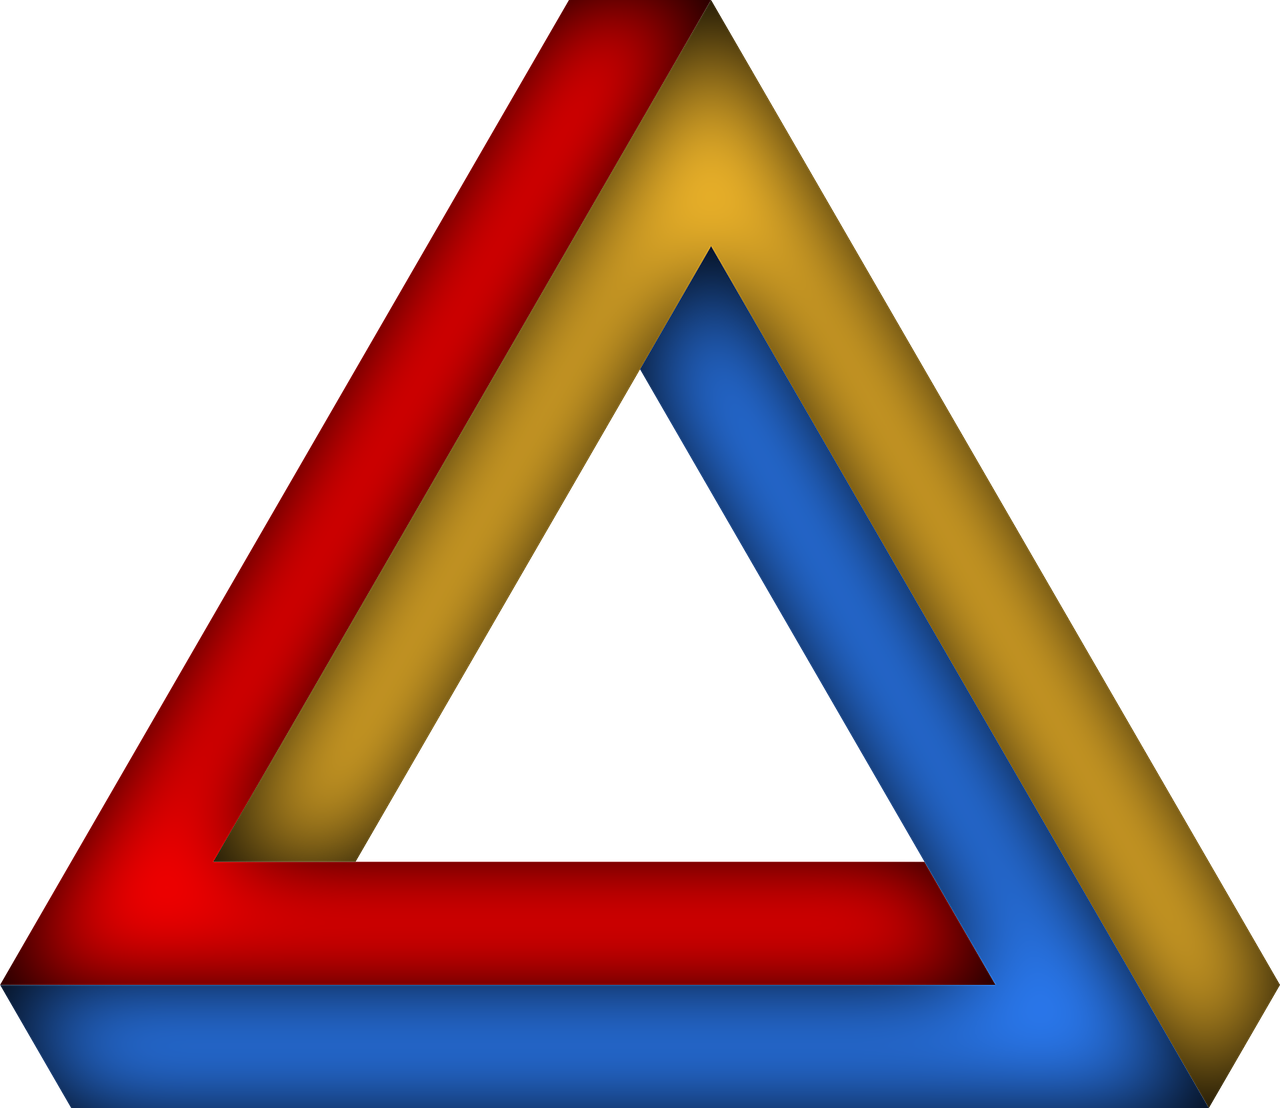 Penrozės Trikampis, Neįmanomas Trikampis, Optinis Apgaulingas, Logotipas, 3D Fantazija, Mirage, Simbolis, Crazy, Geometrija, Neįmanomas